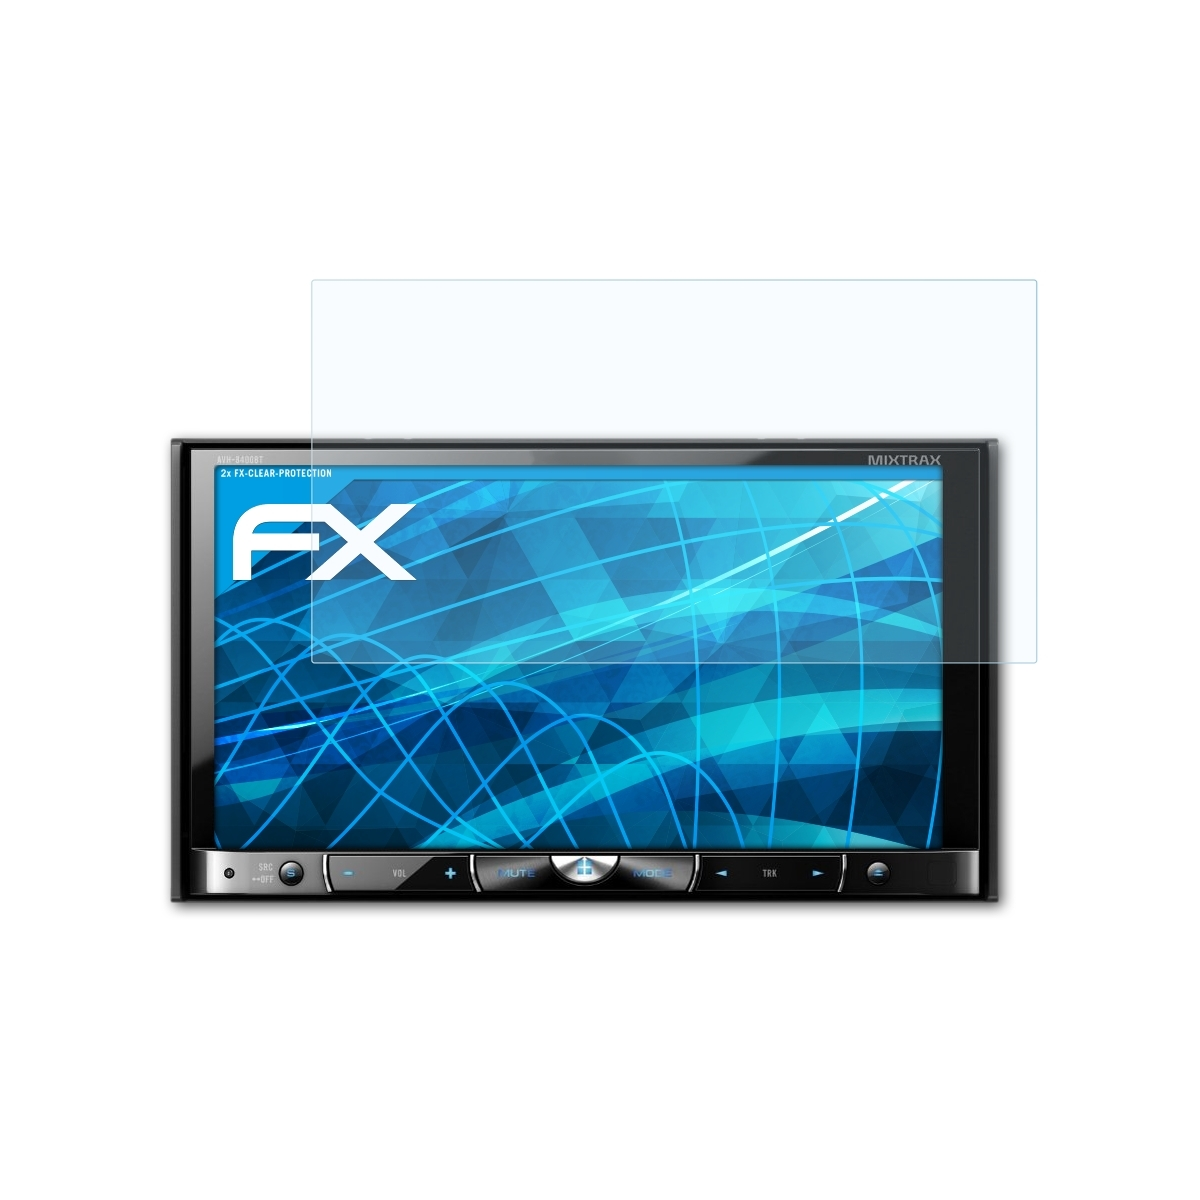 FX-Clear 2x Displayschutz(für ATFOLIX Pioneer AVH-8400BT)